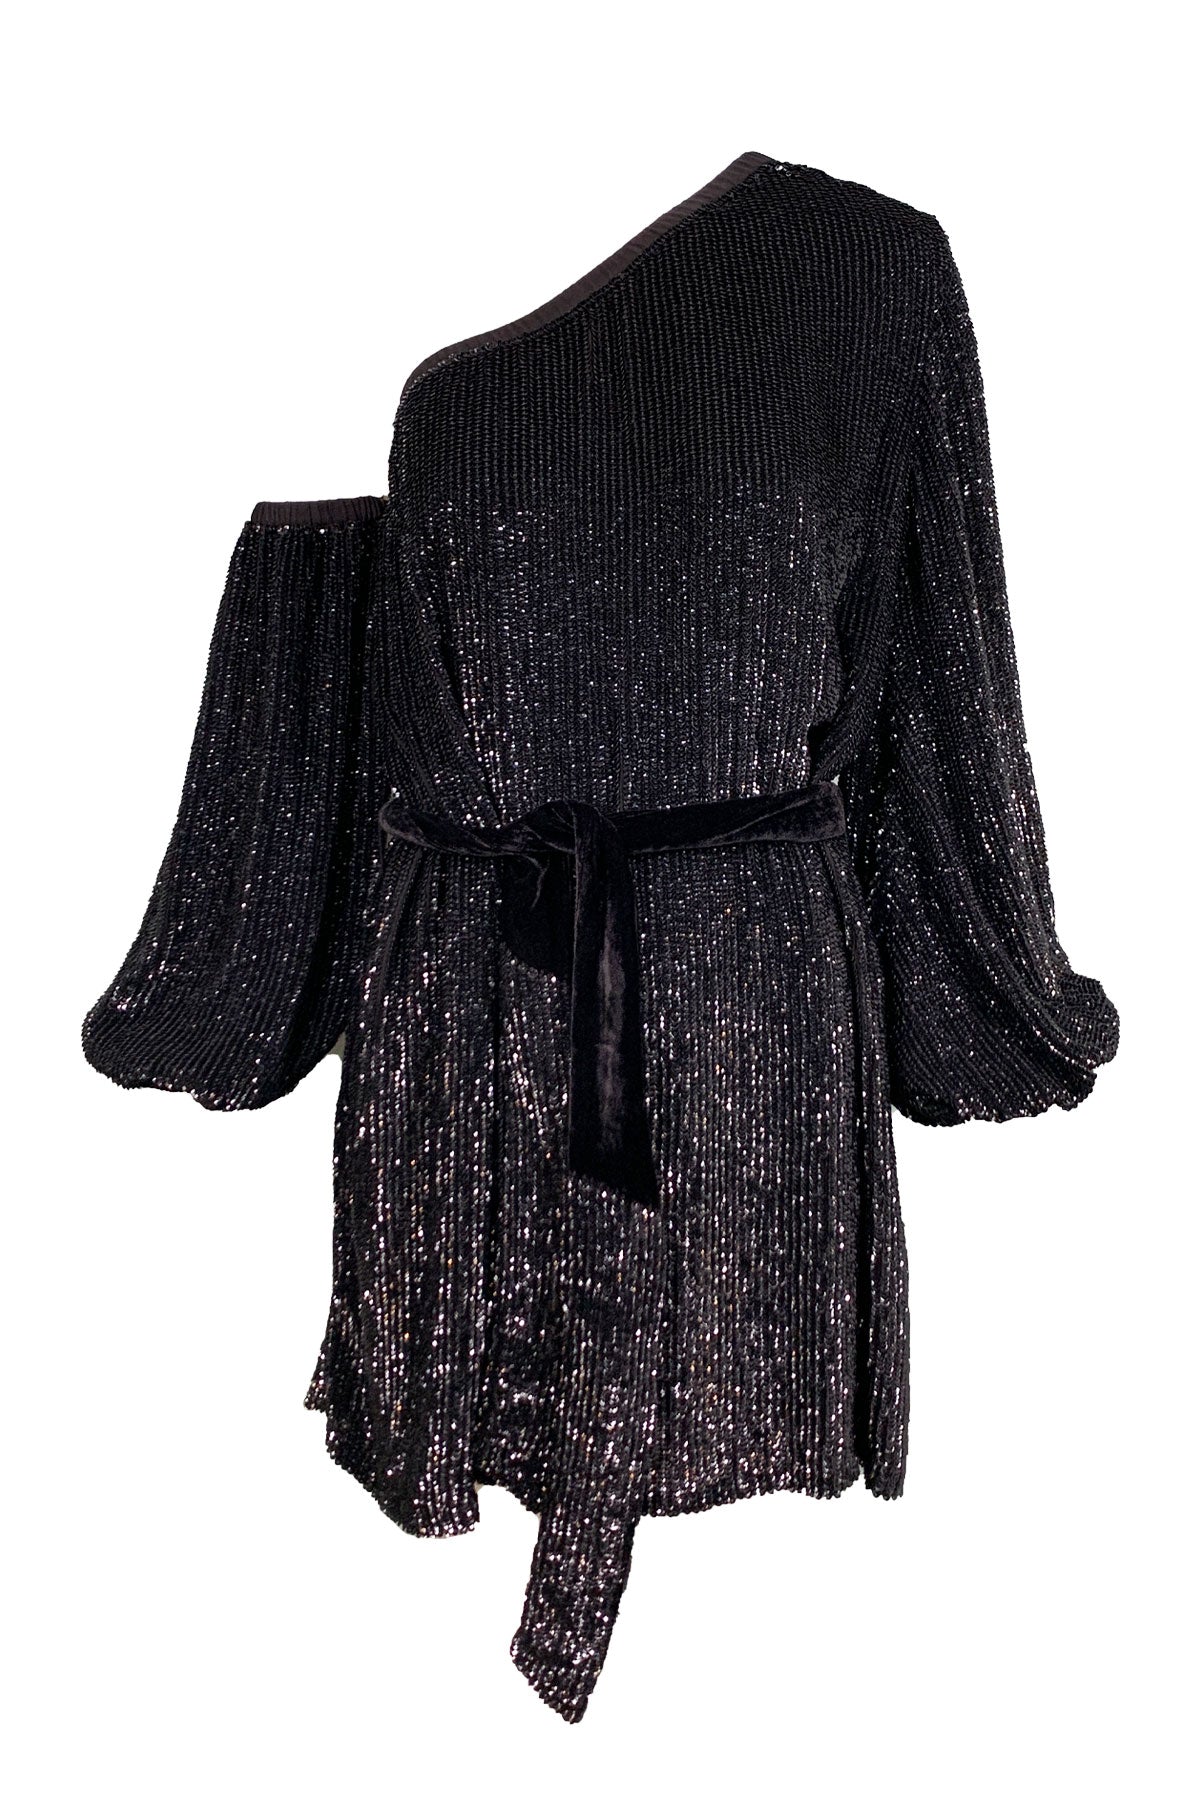 Giselle Dress in Black - shop-olivia.com